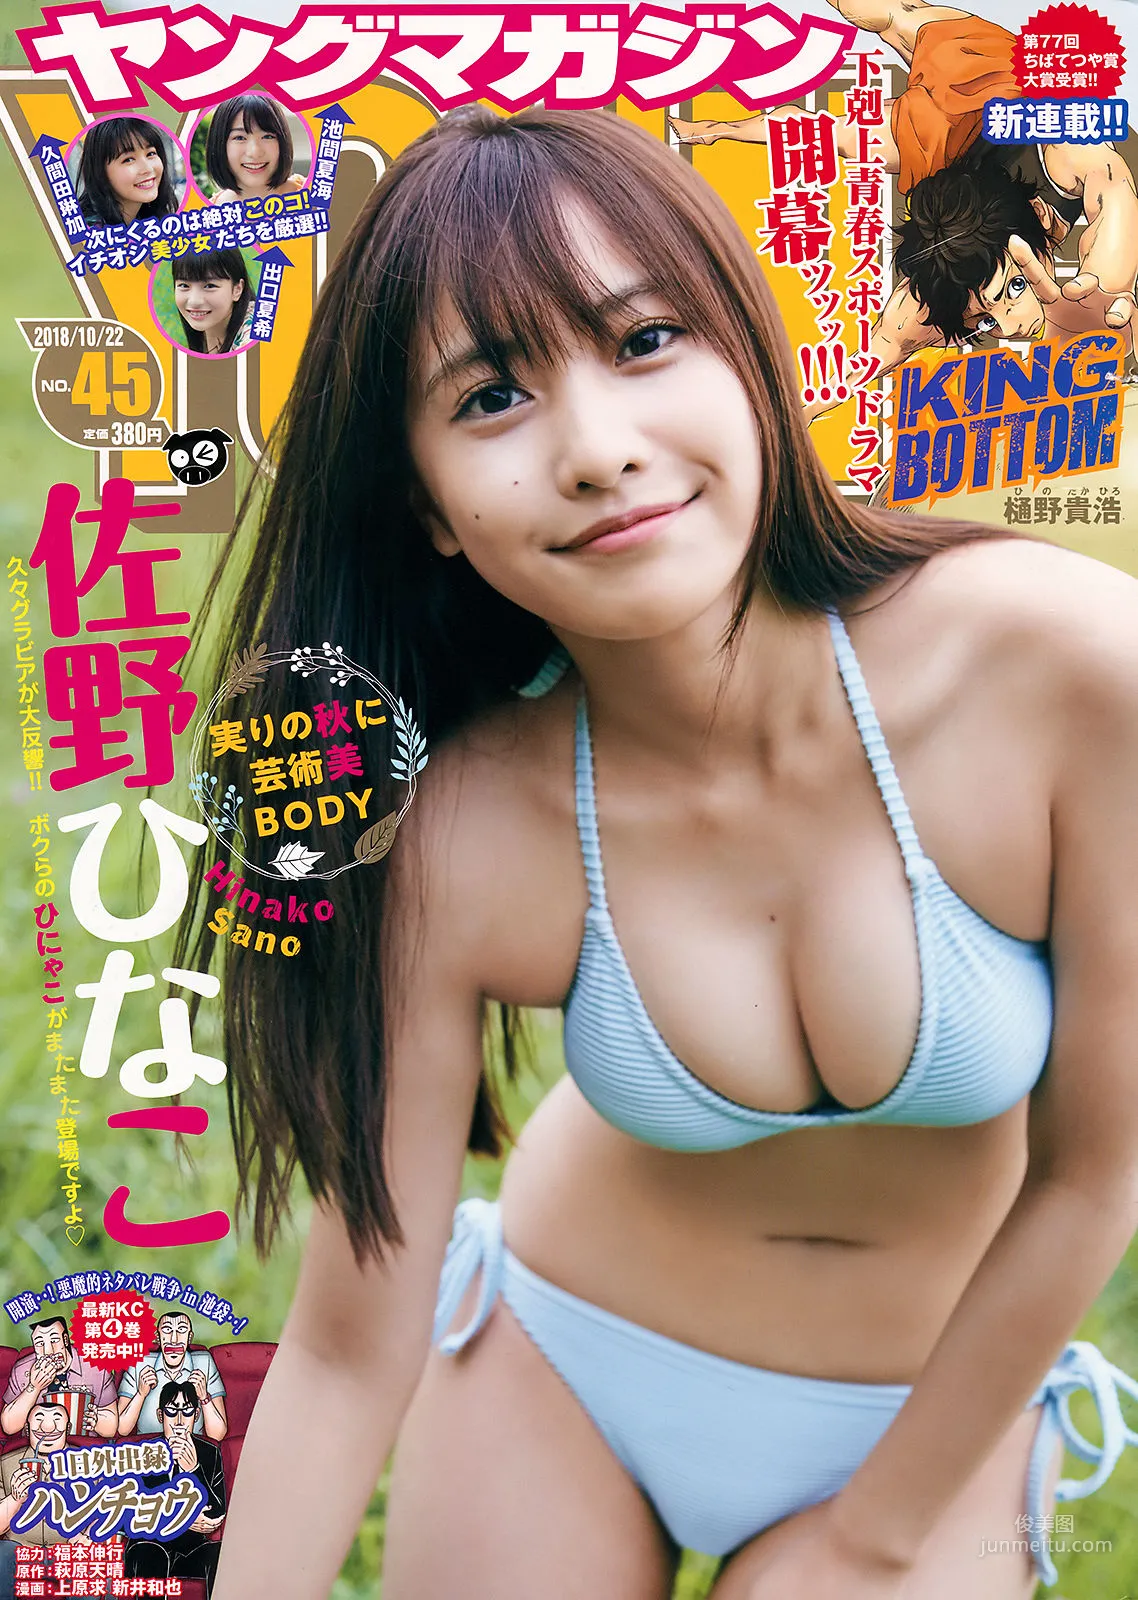 [Young Magazine] 佐野ひなこ Hinako Sano 2018年No.45 写真杂志1